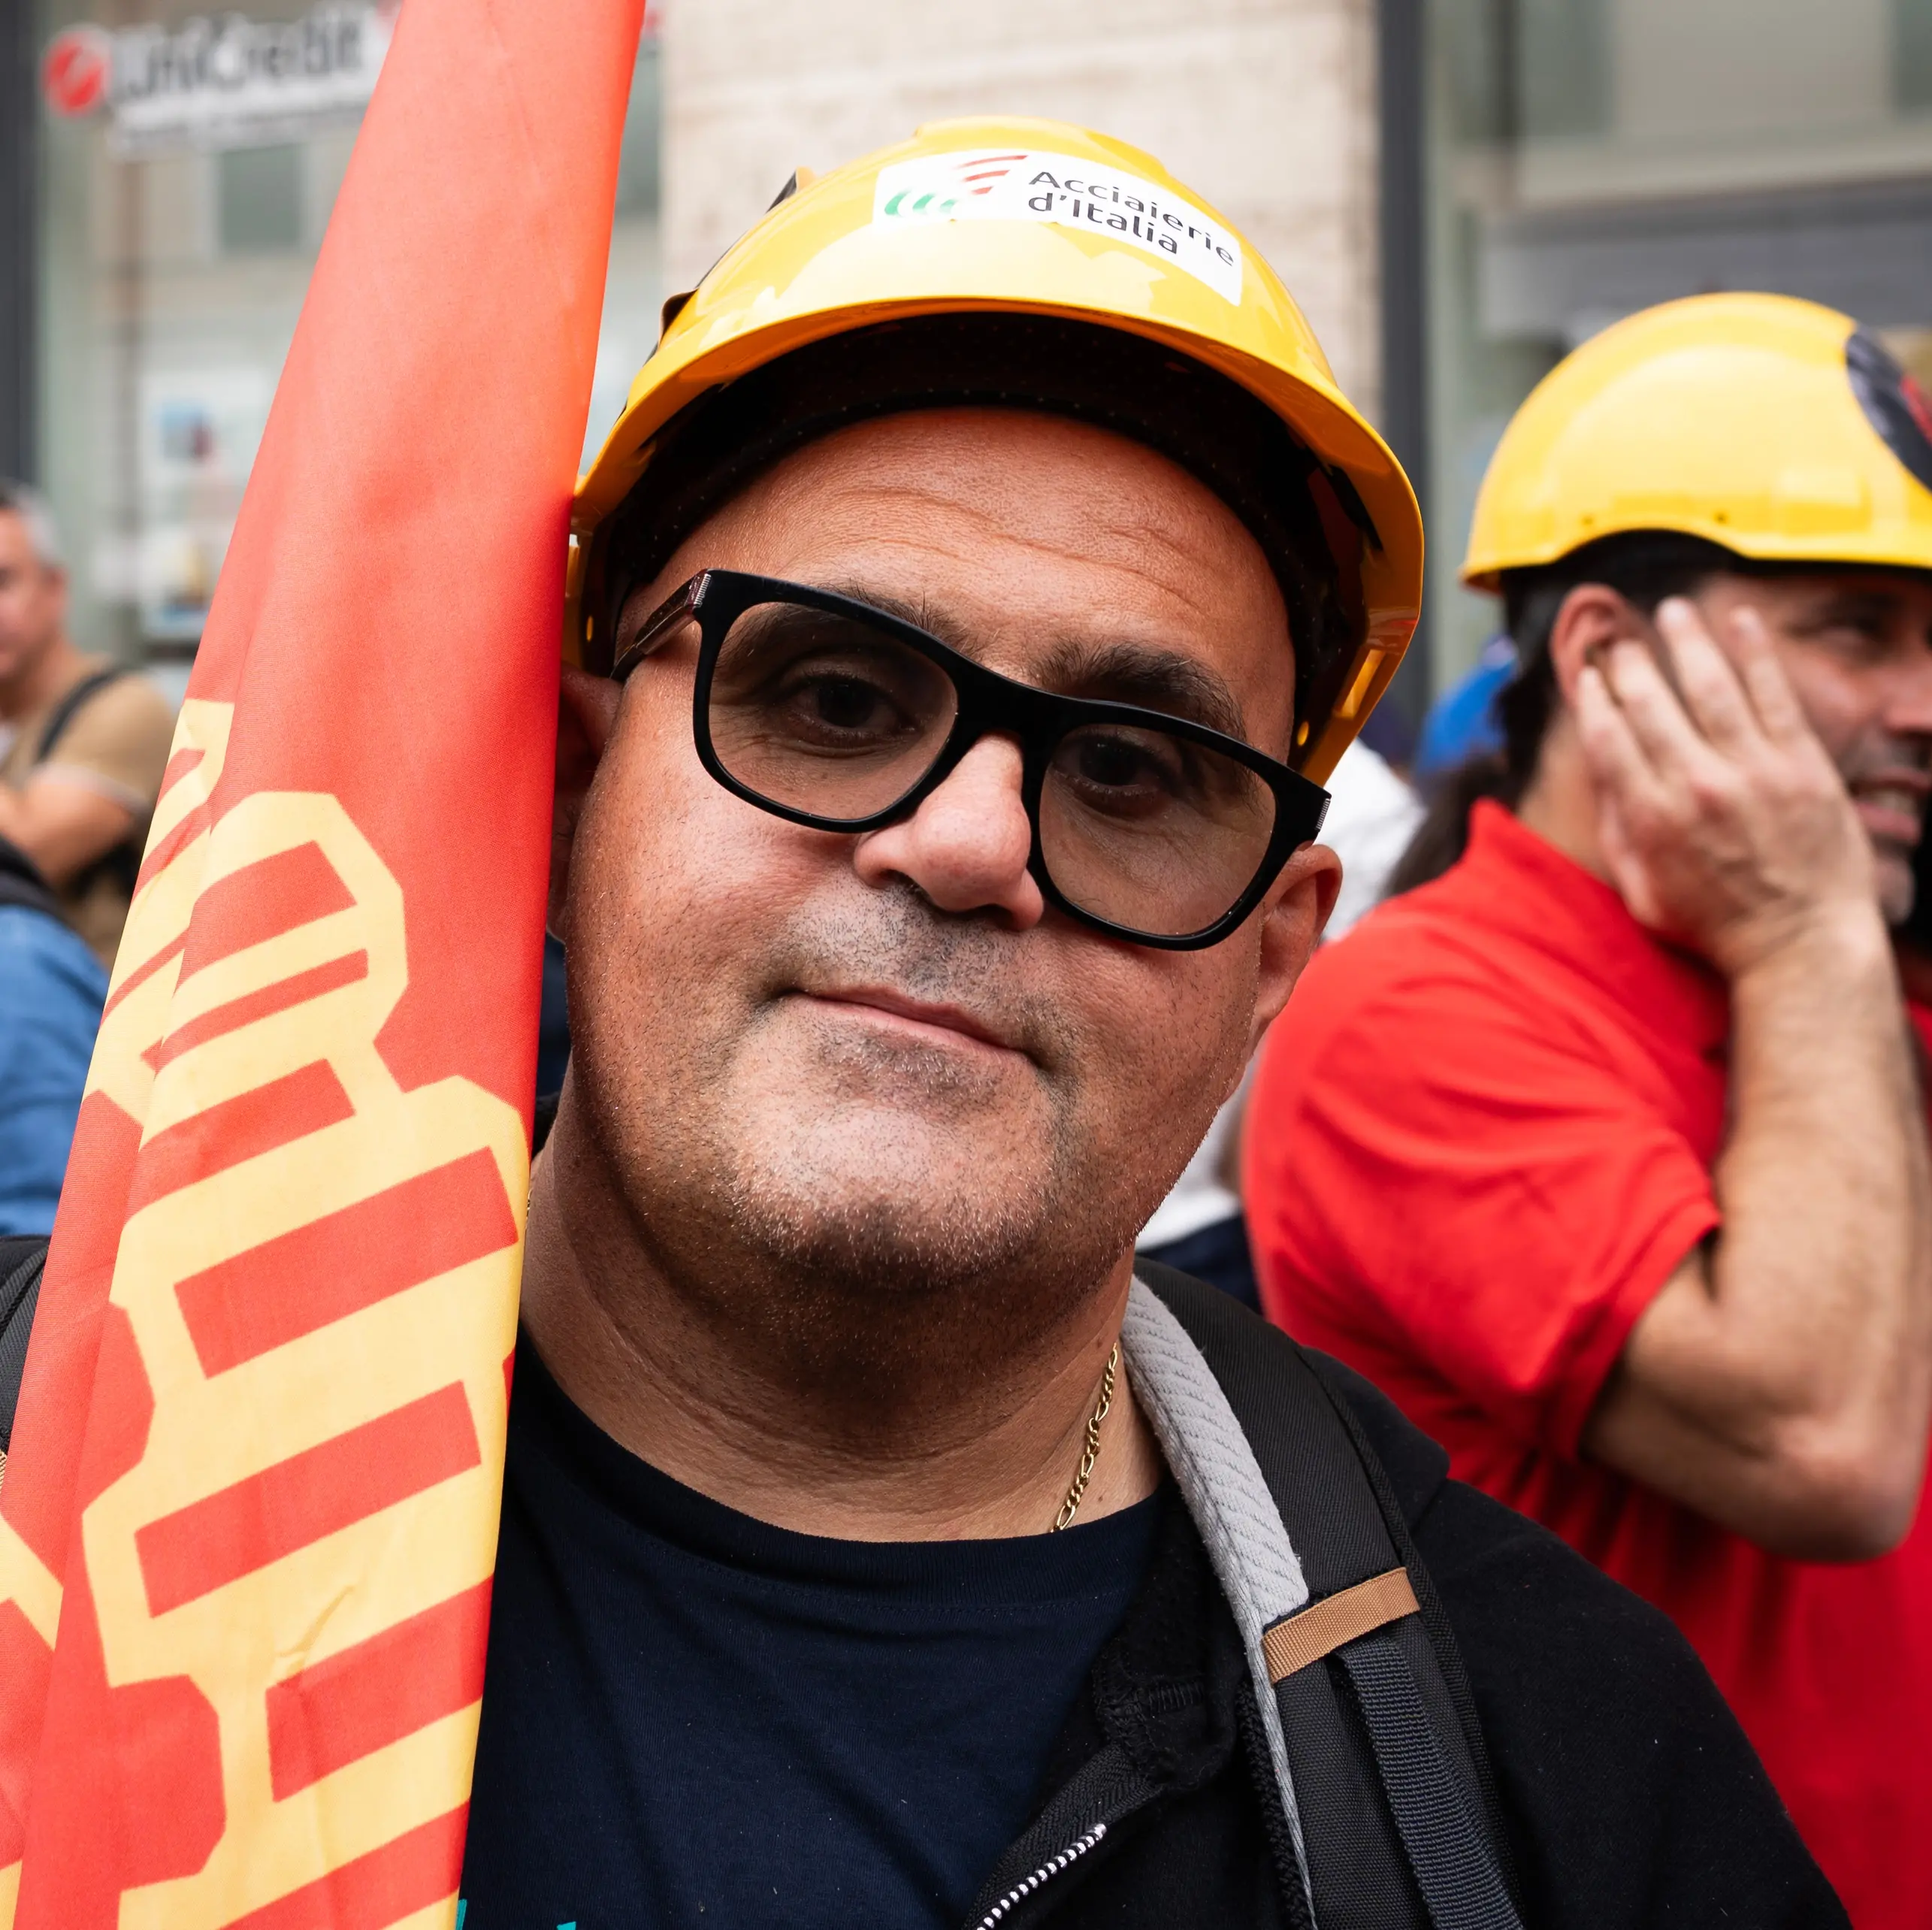 Acciaierie d’Italia: Fiom, la mobilitazione continua